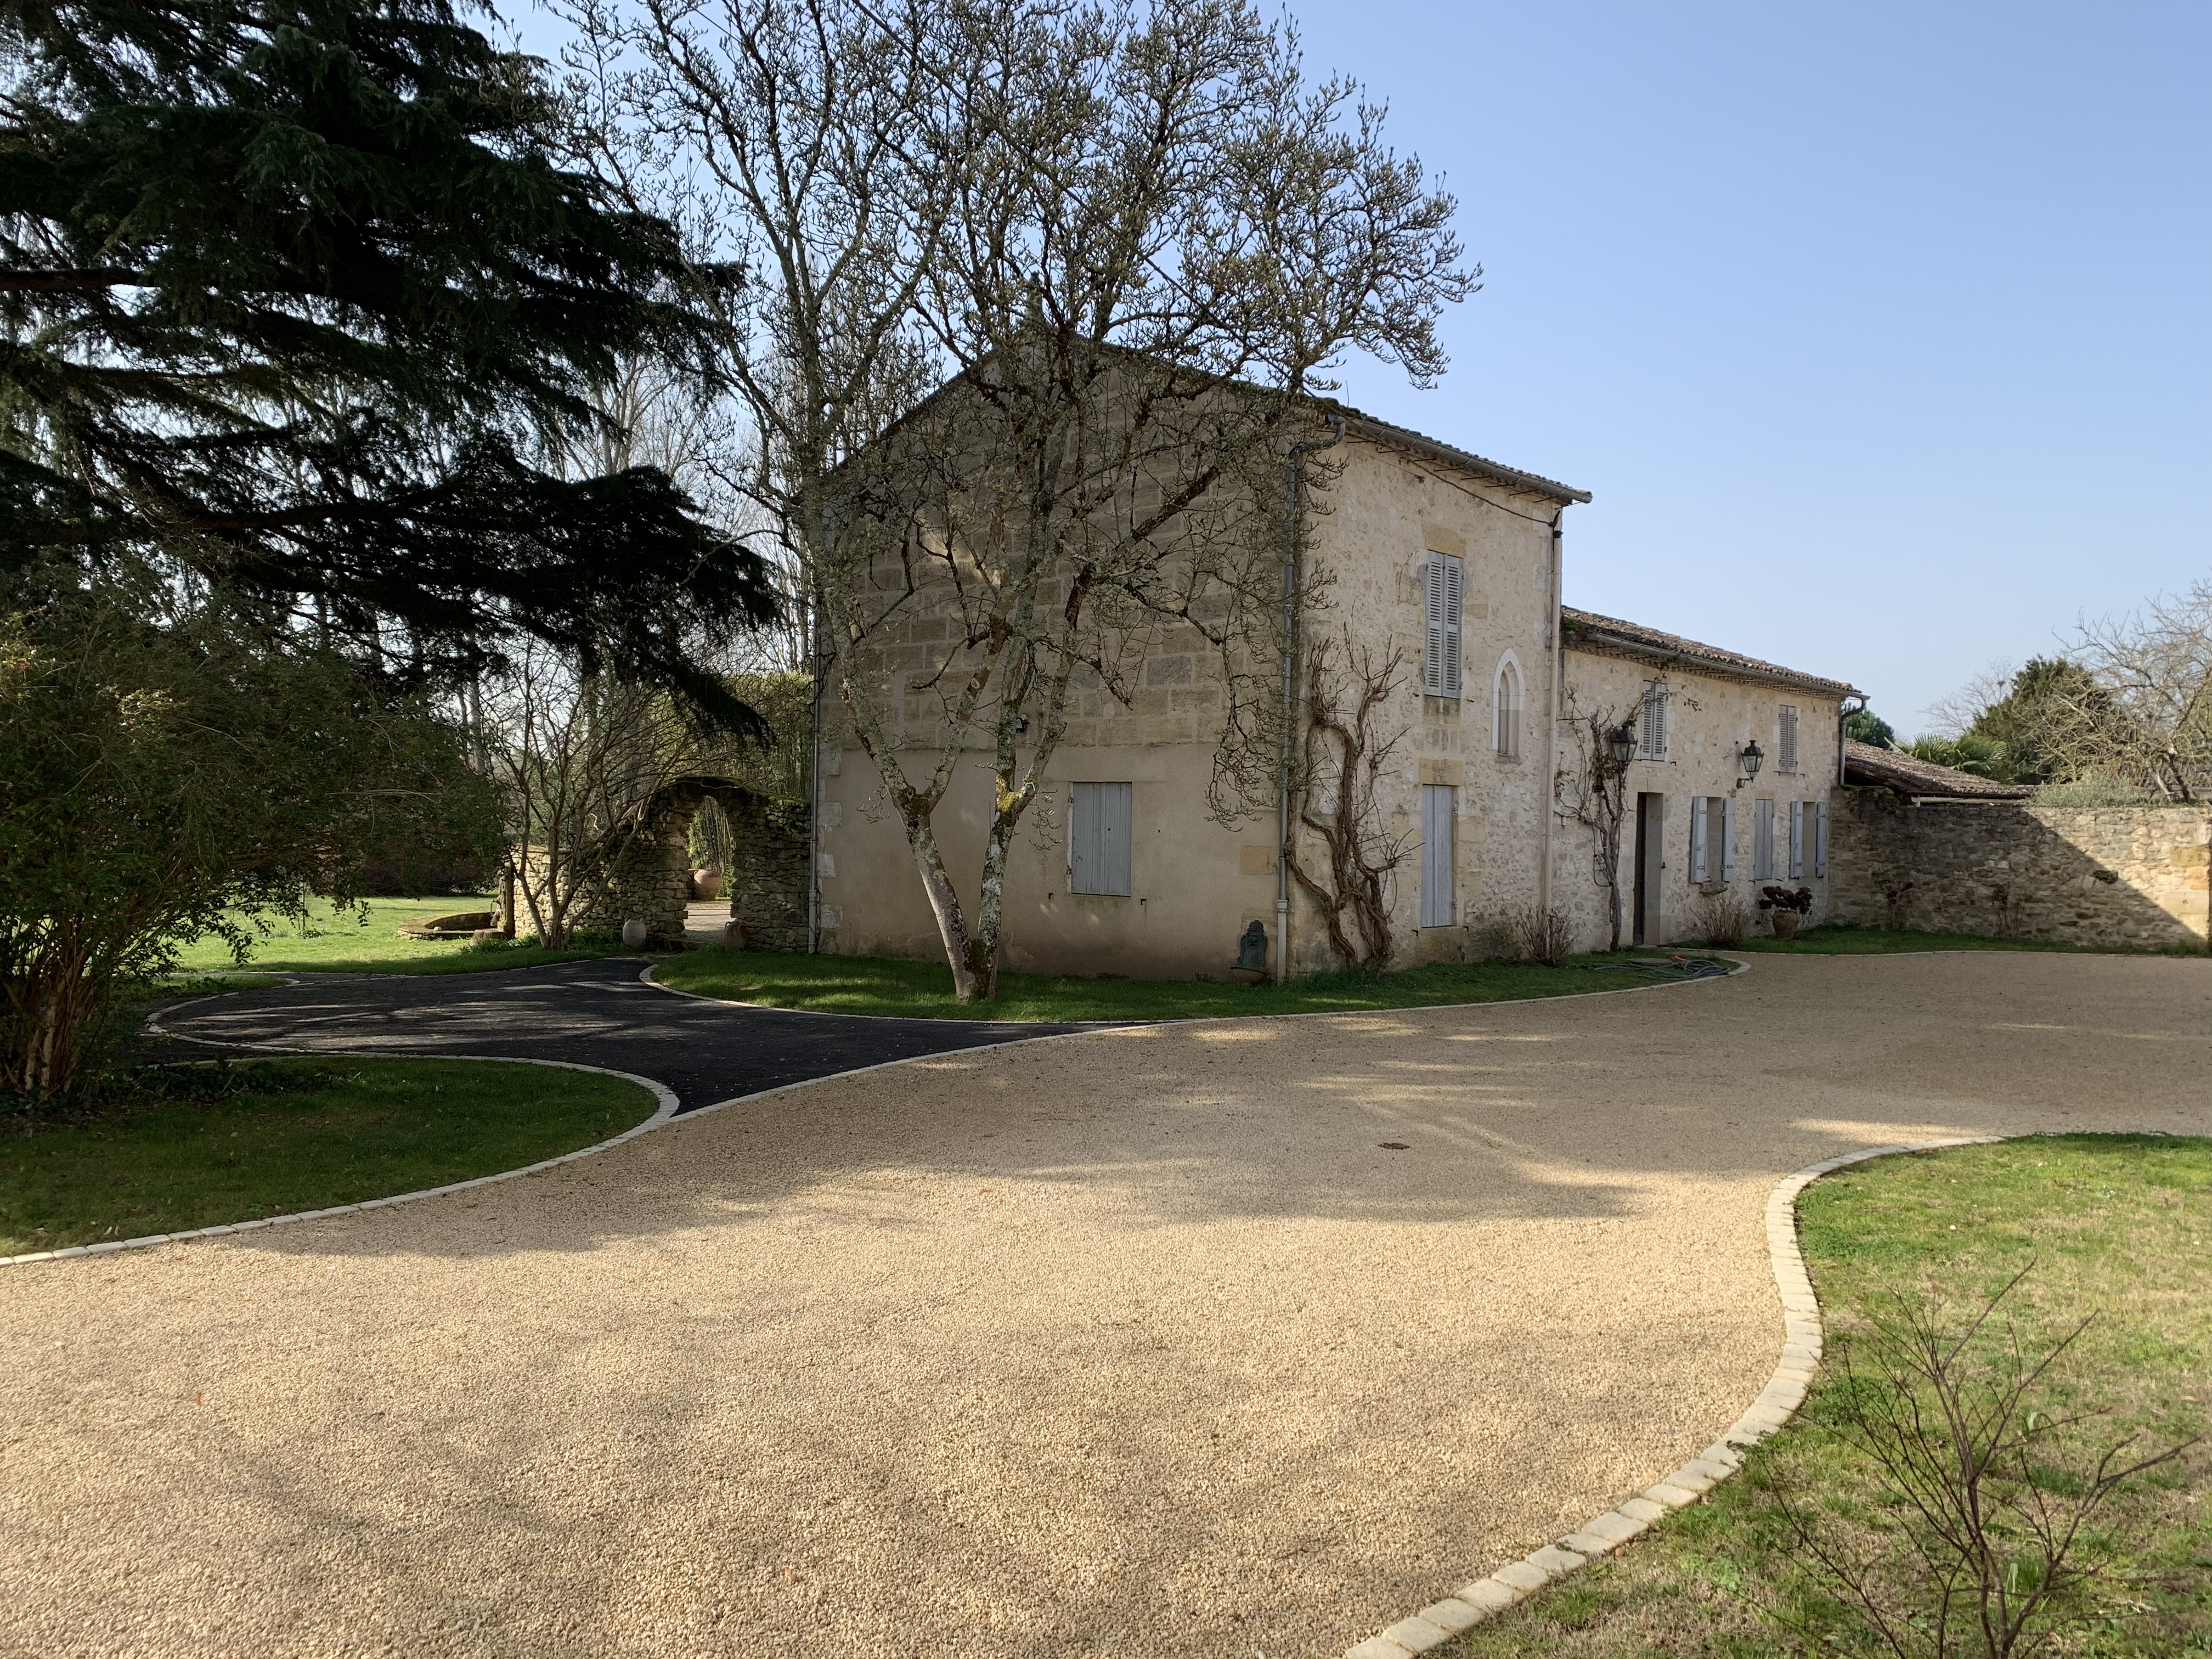 Ralisation cour en Gravistar et pav La Couture - Dordogne conue le 16/05/2019